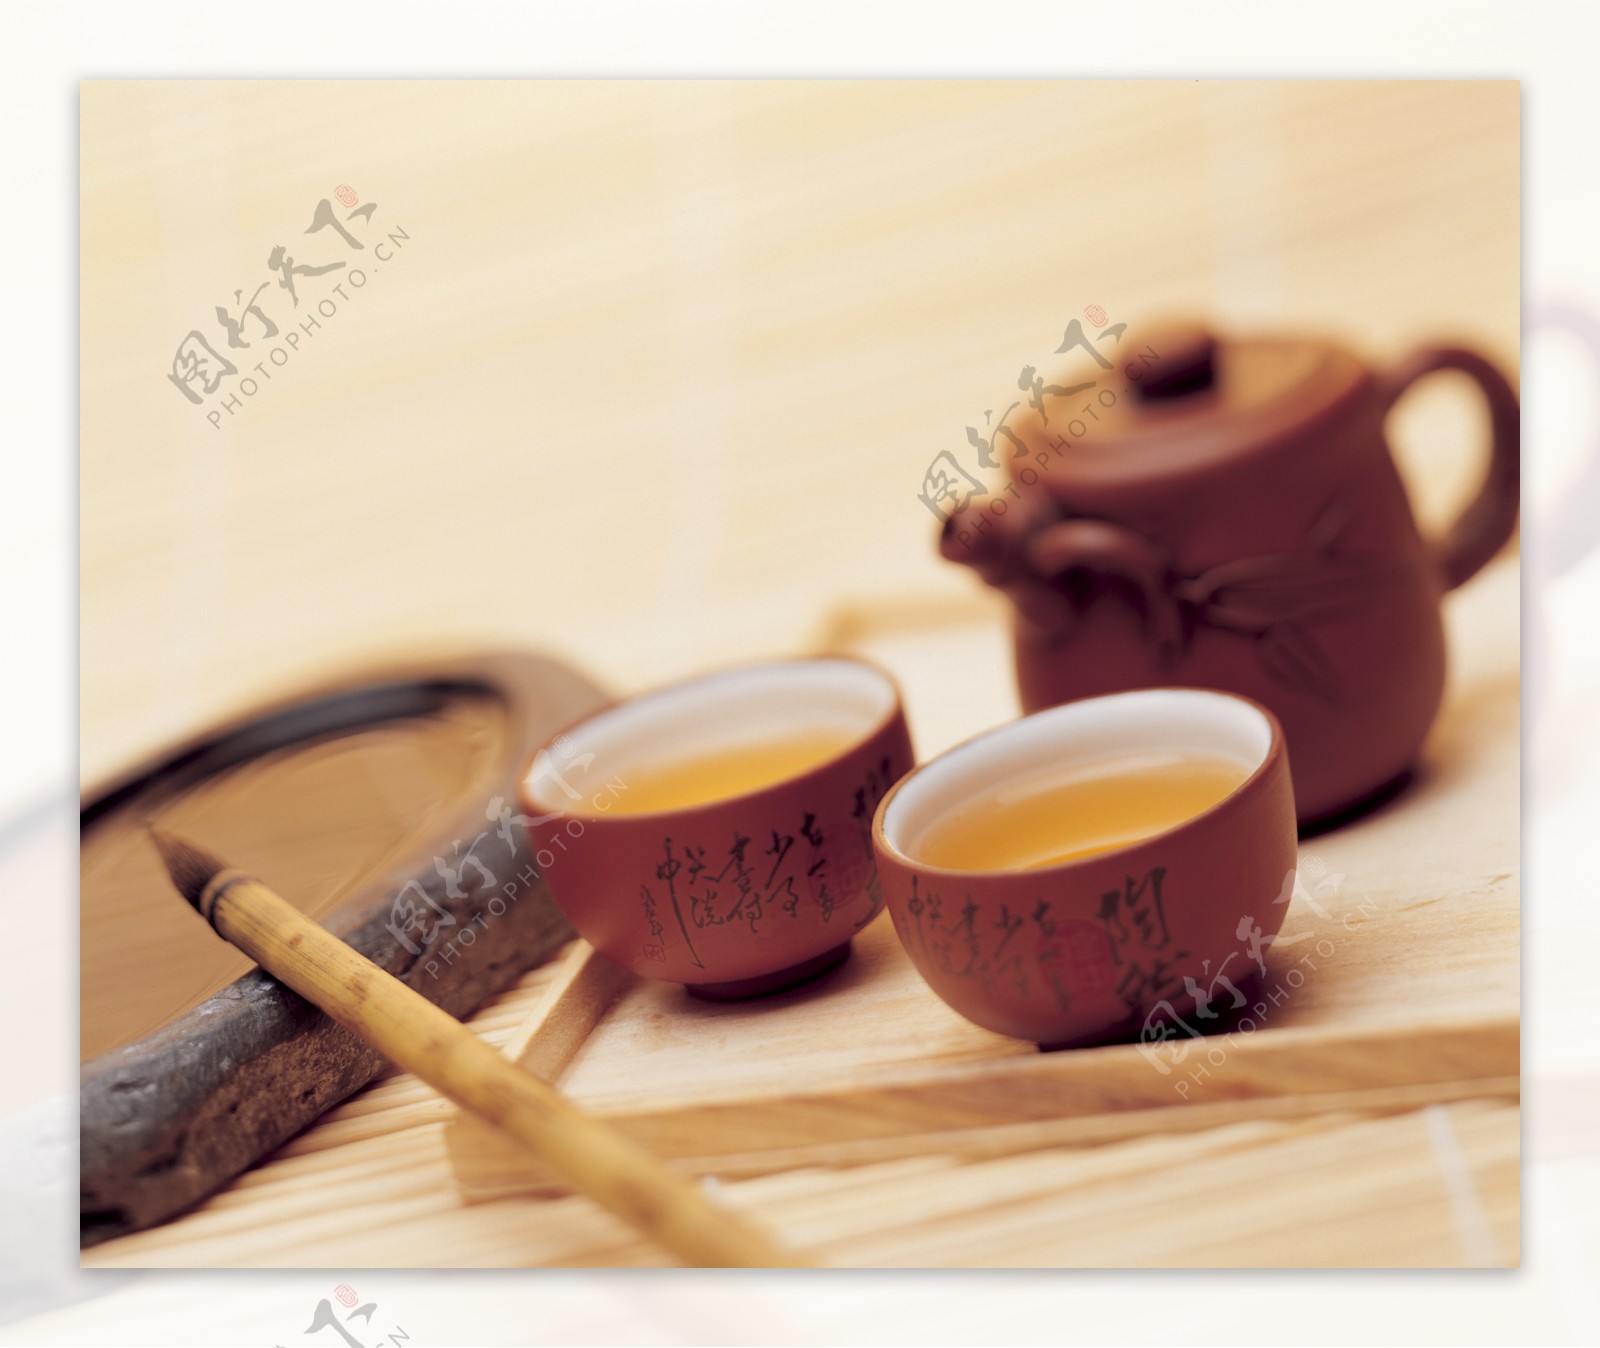 品尝品茶饮料饮品茶叶茶壶茶具茶杯古色古香茶水广告素材大辞典